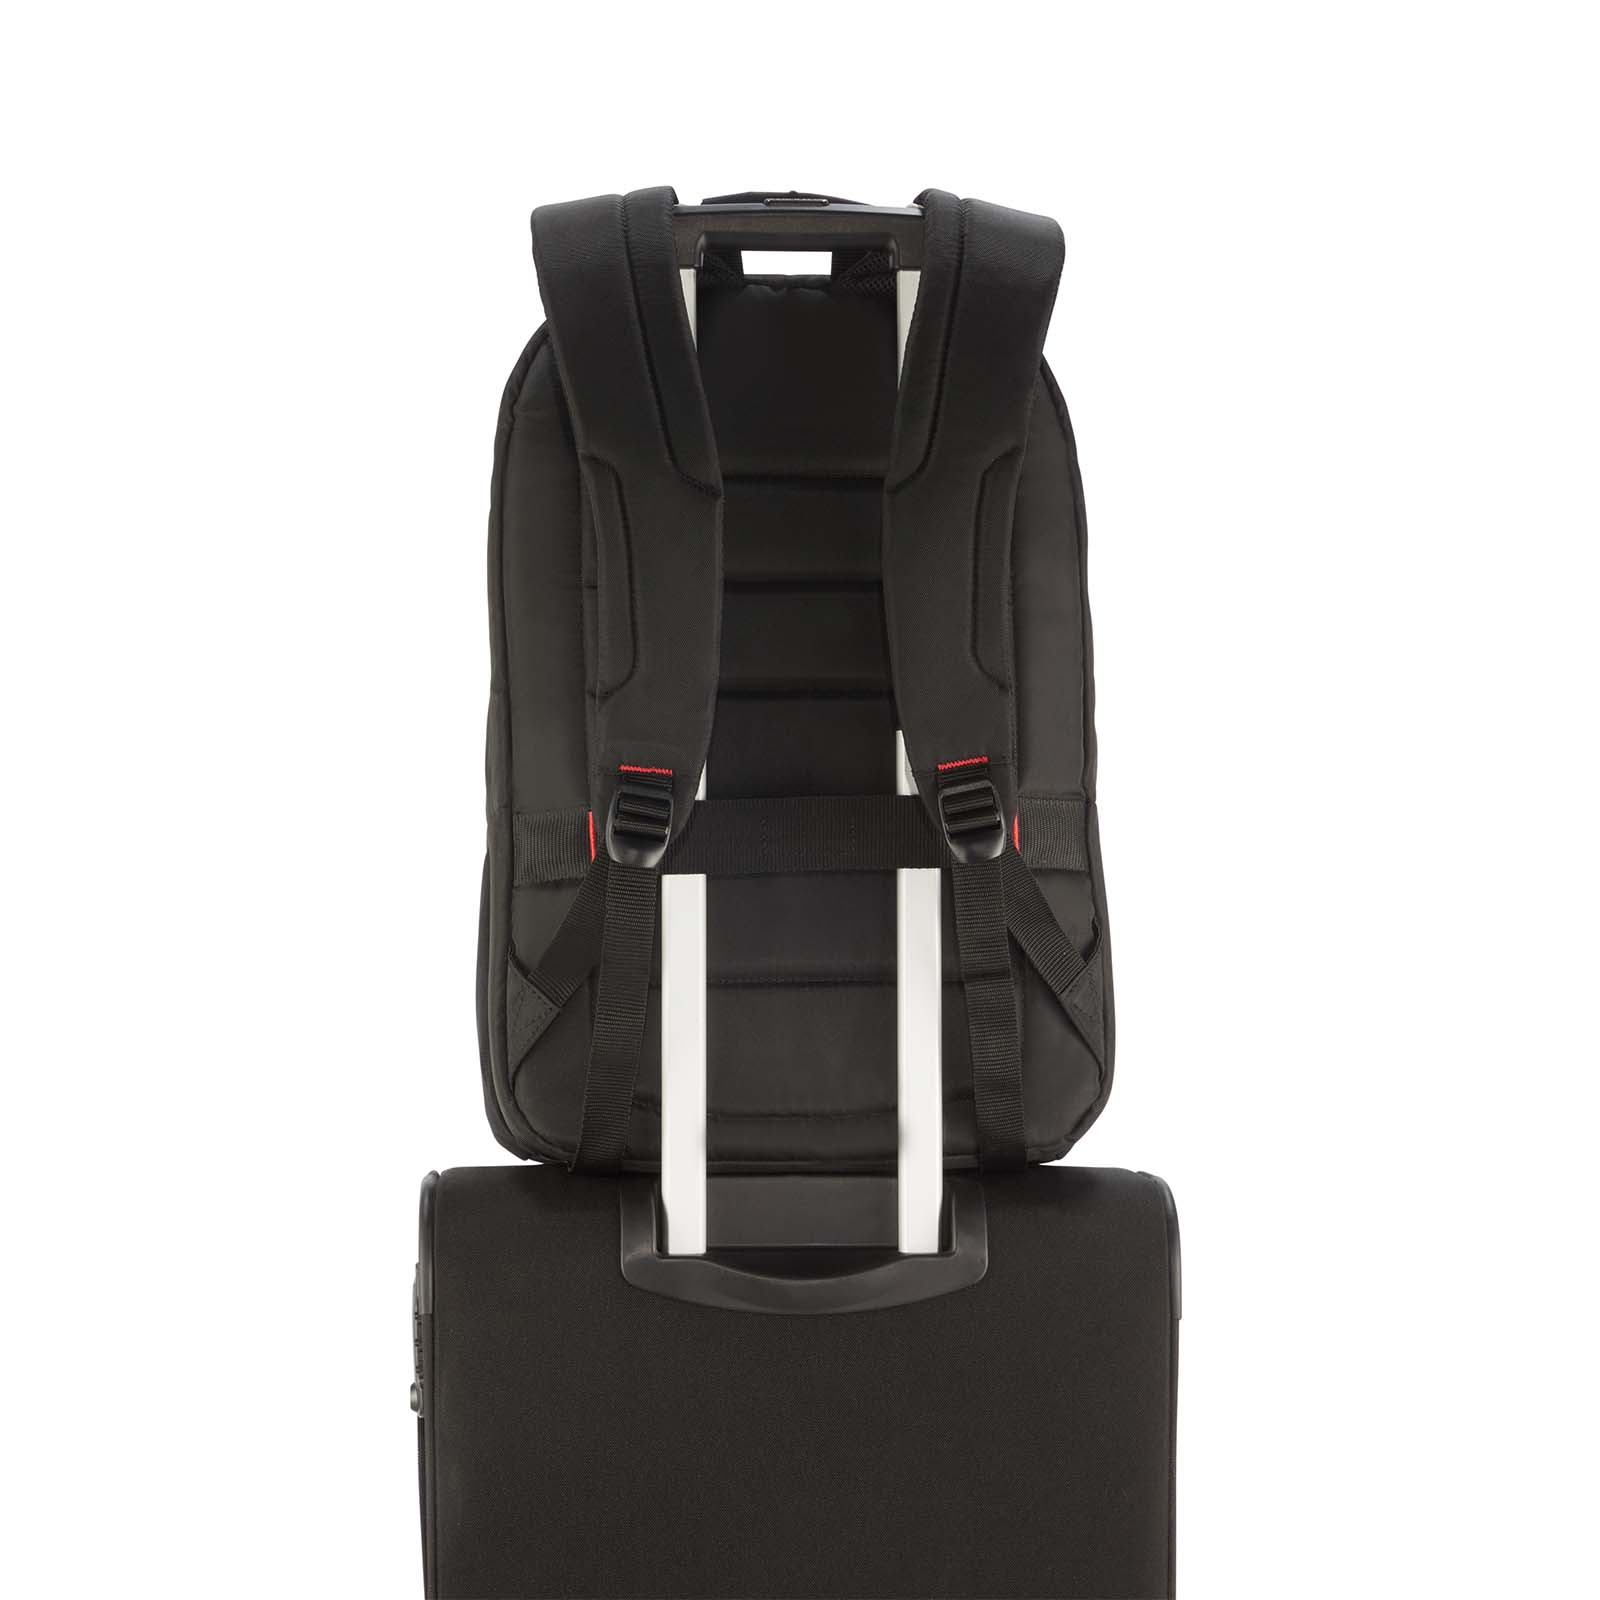 Samsonite-Guardit-2-17-Inch-Laptop-Backpack-Smart-Sleeve